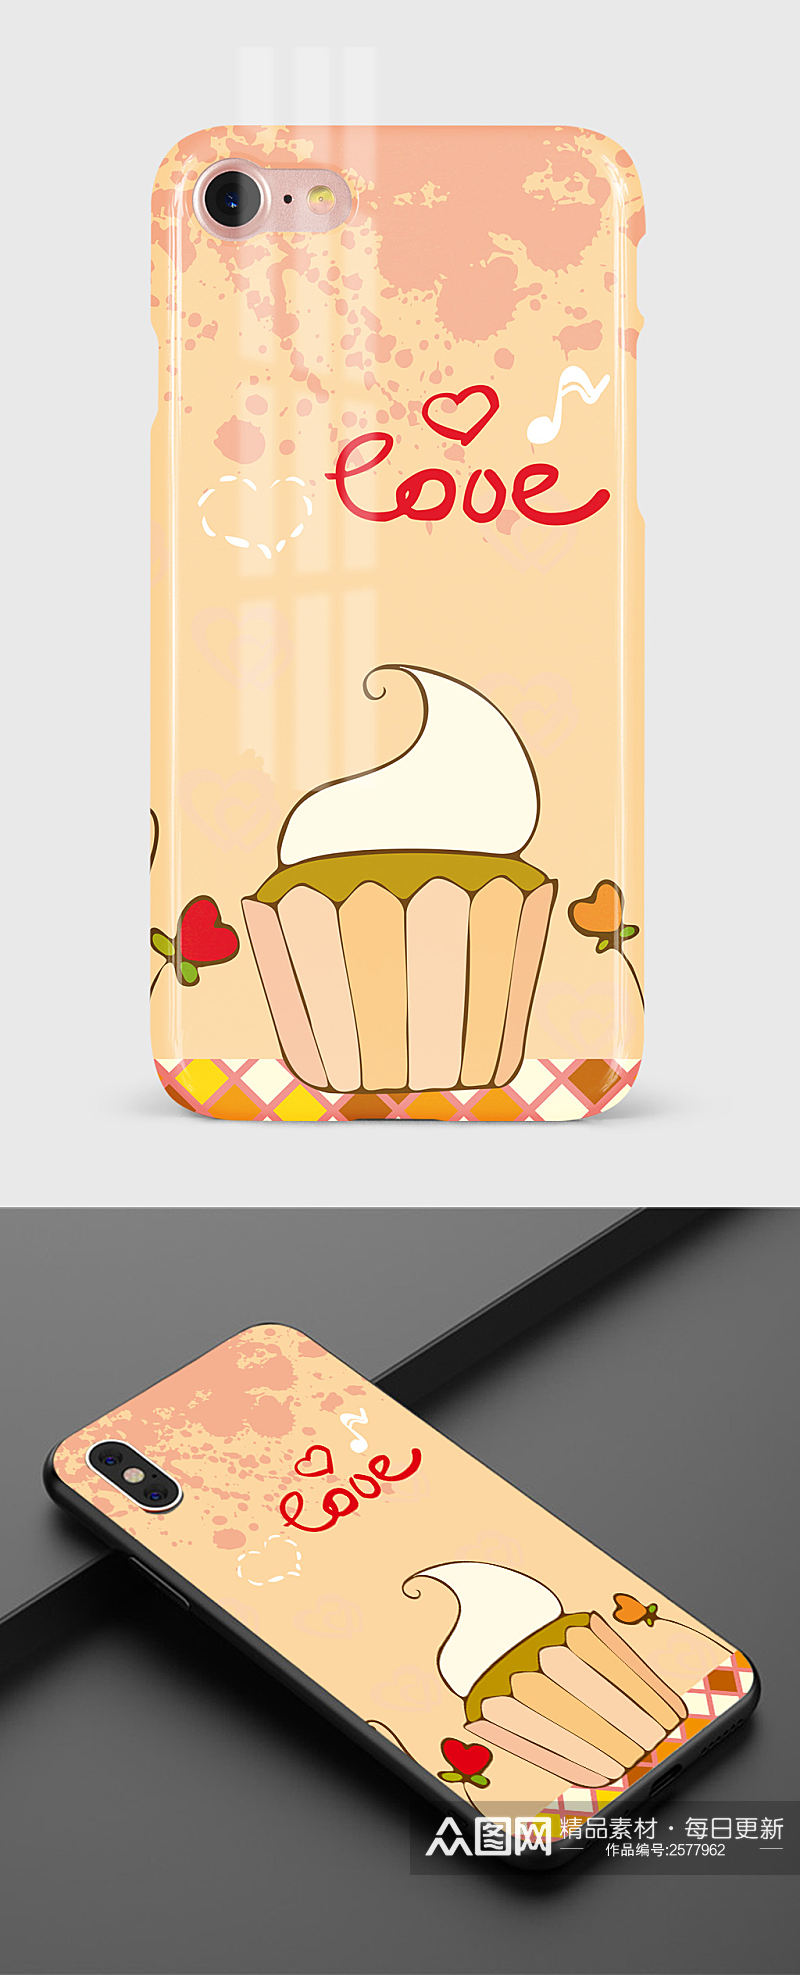 矢量手绘卡通纸杯蛋糕手机壳图案素材